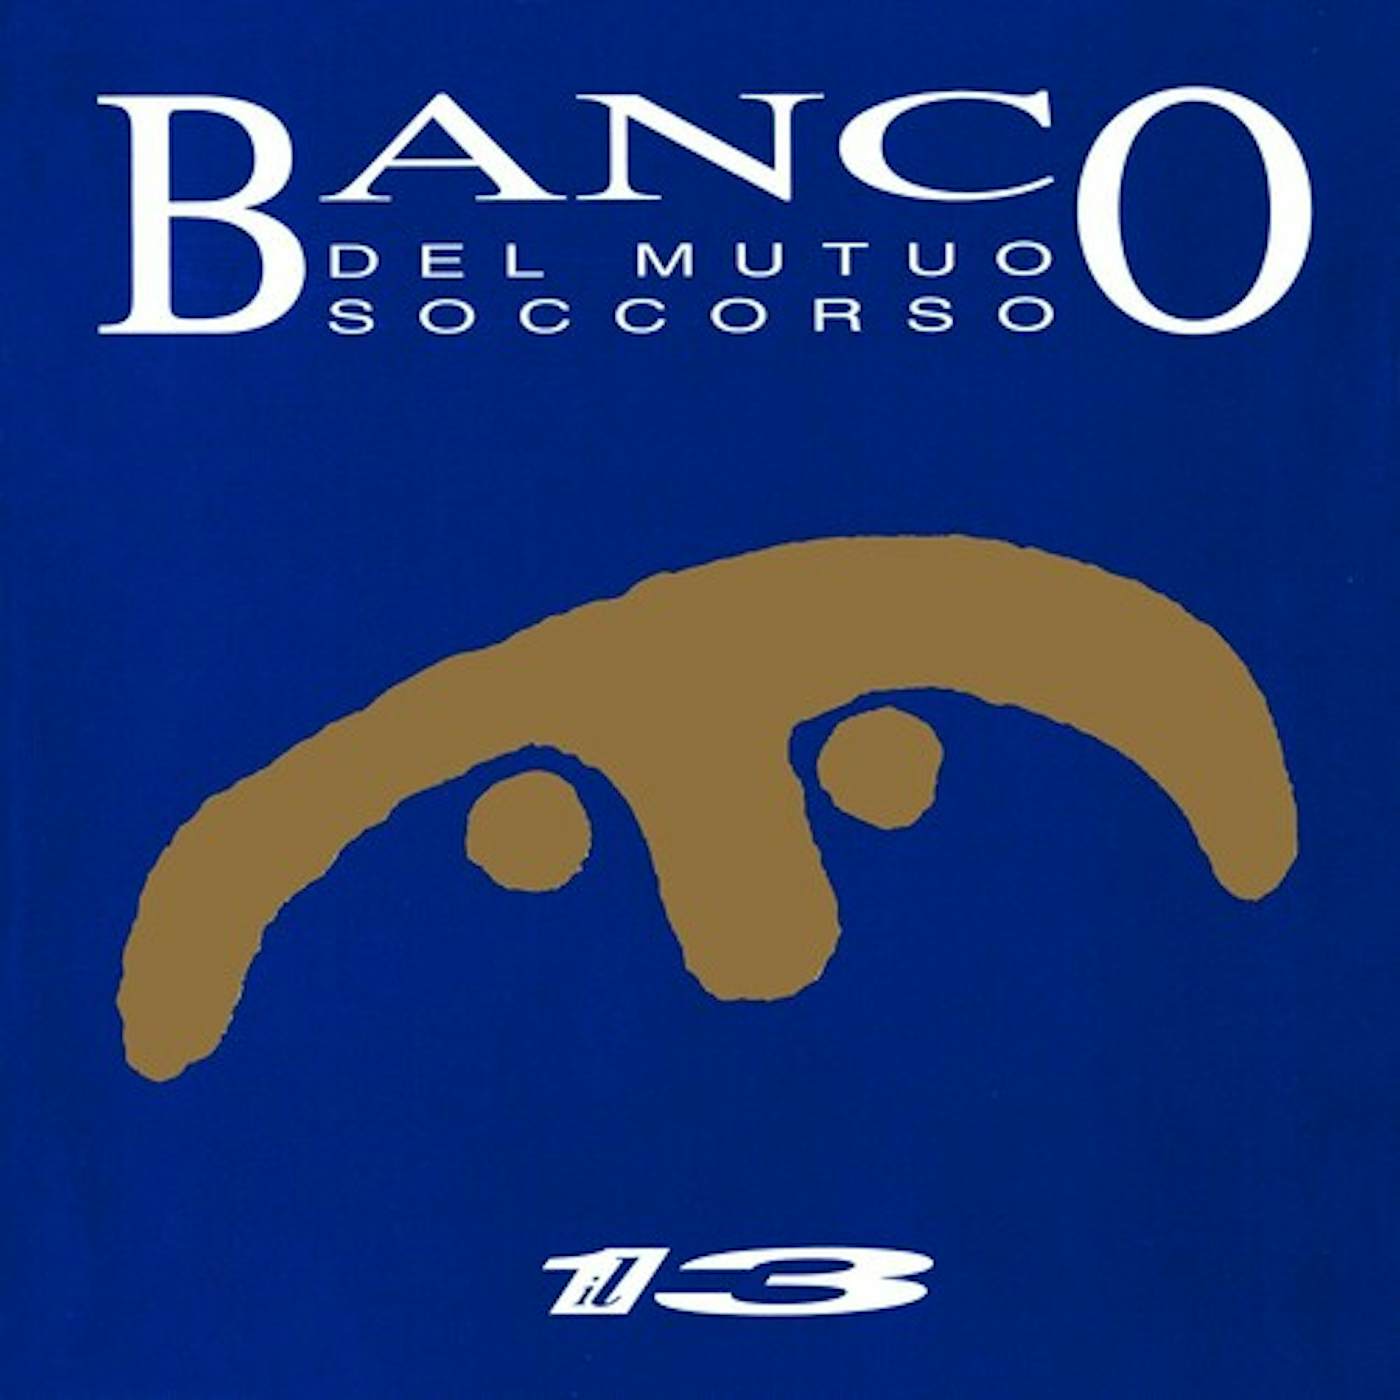 Banco Del Mutuo Soccorso IL 13 CD